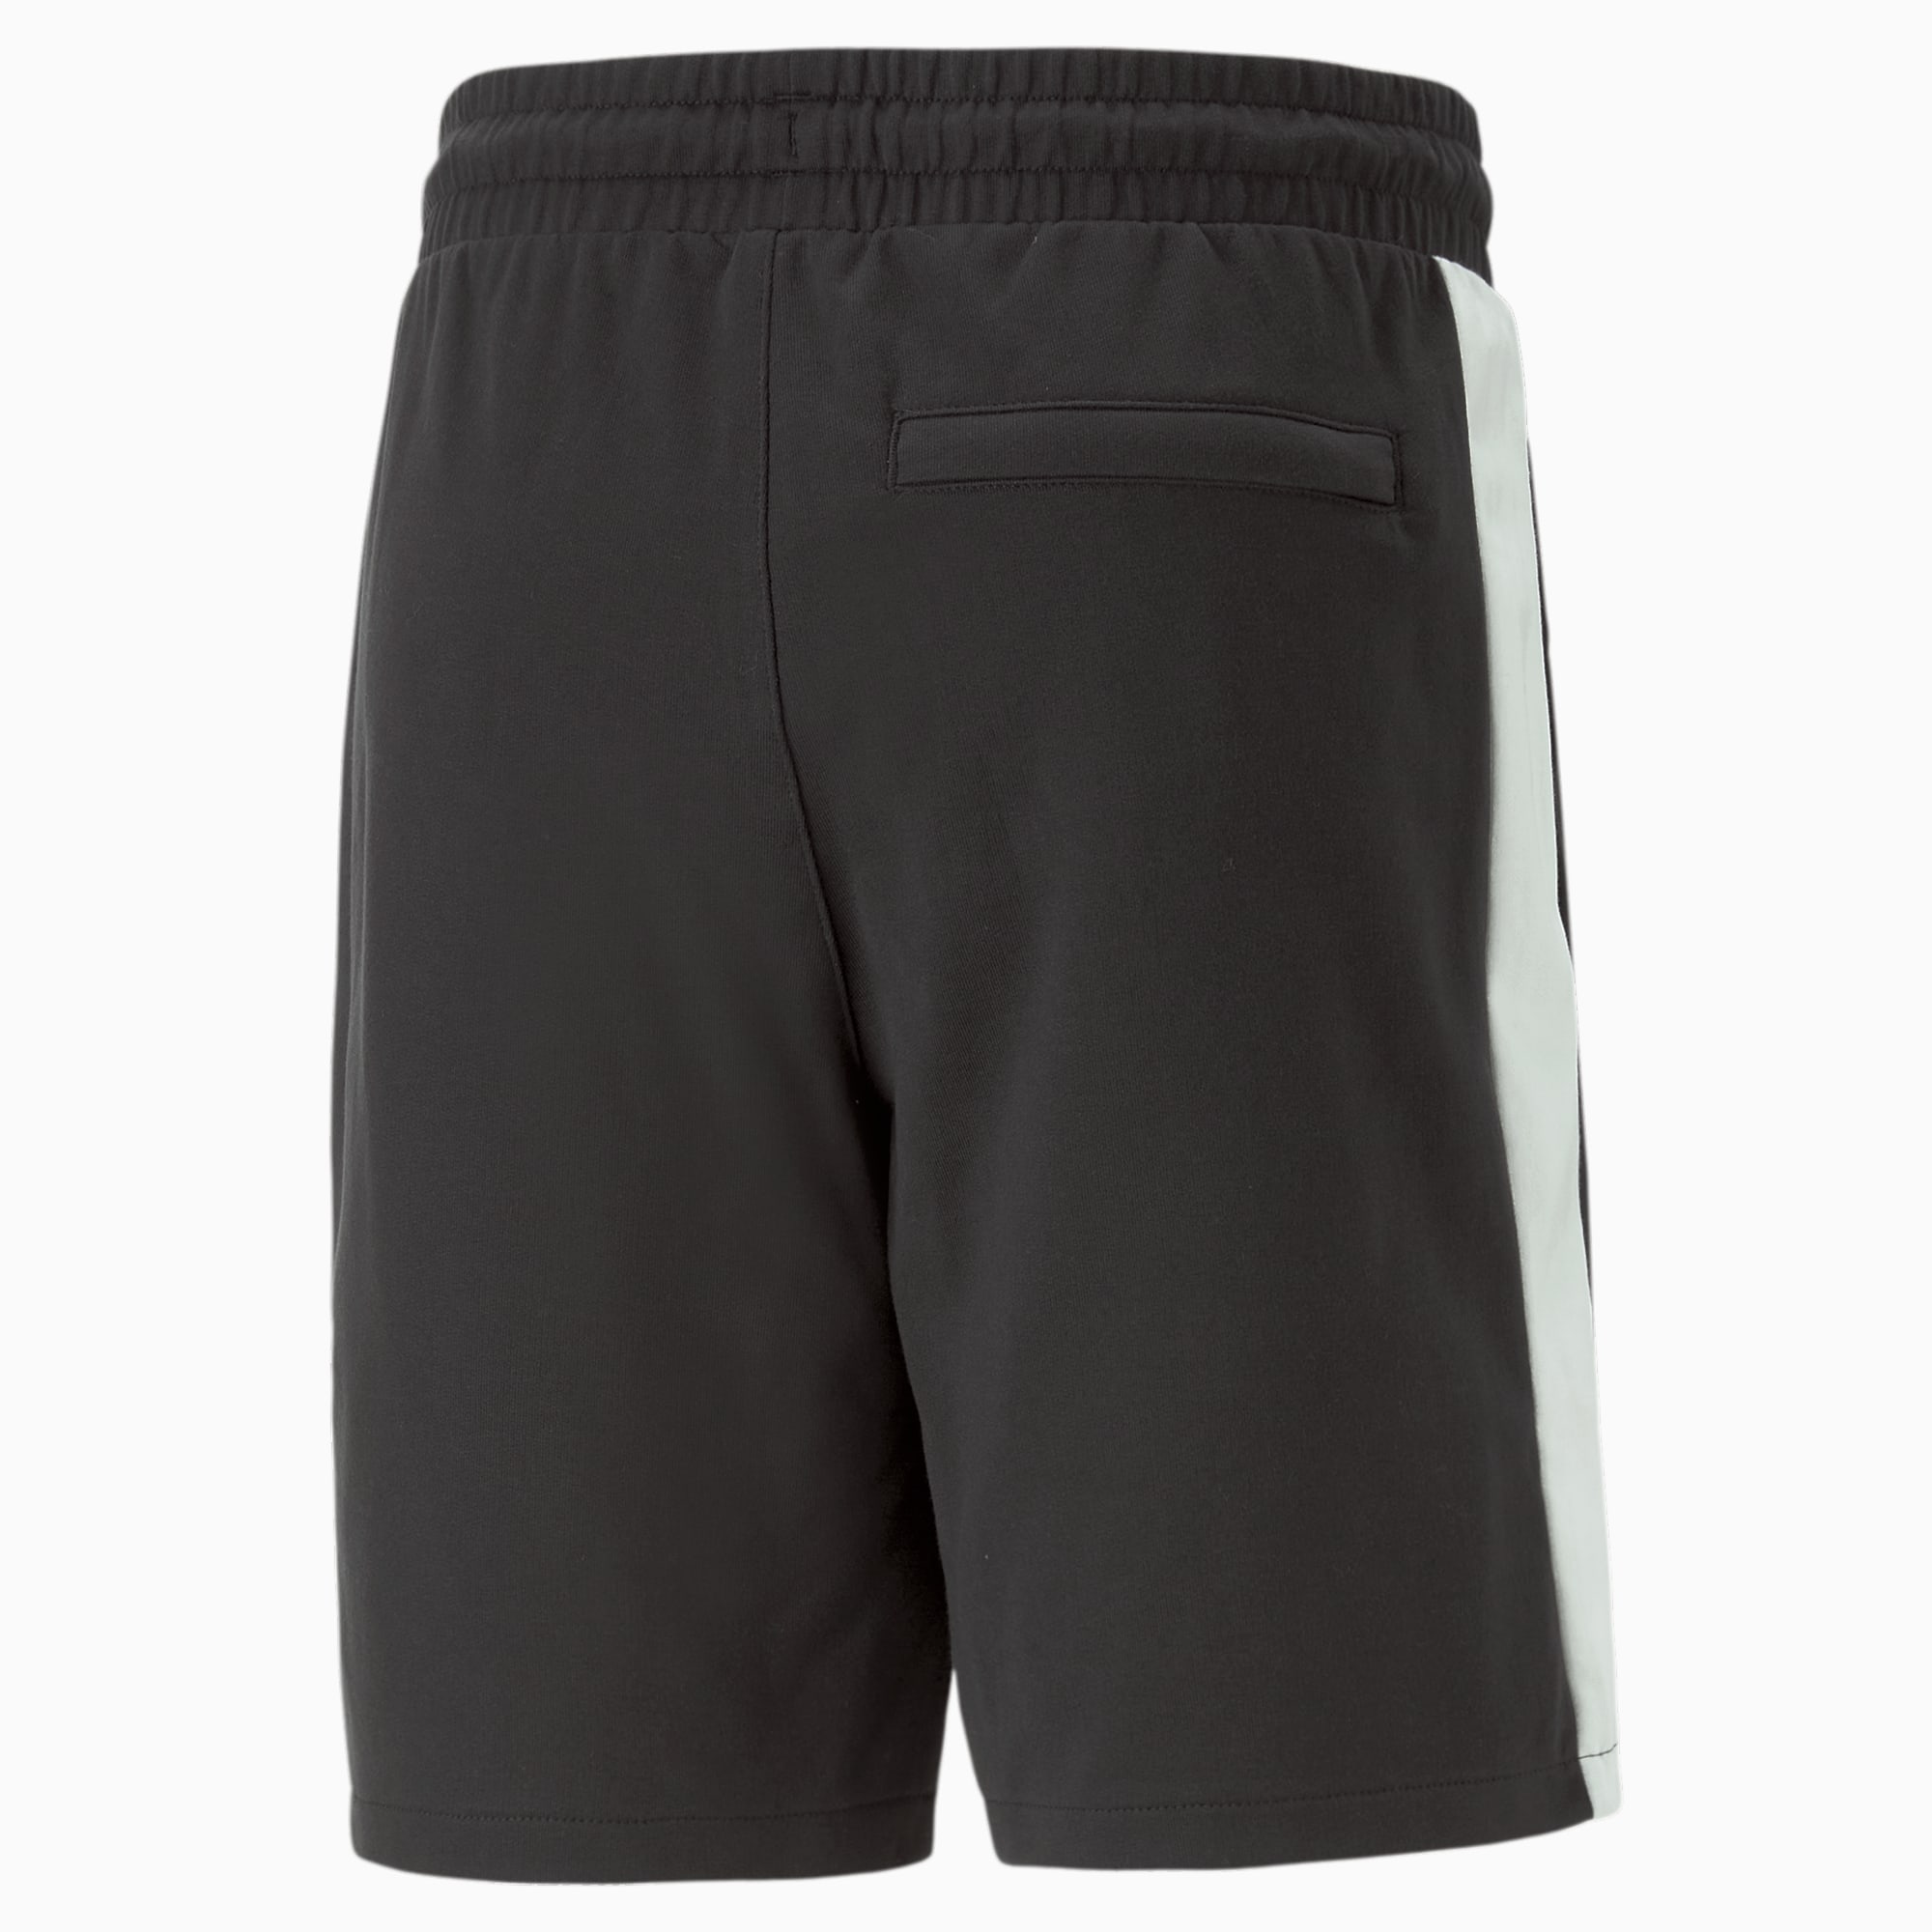 PUMA T7 Iconic Shorts Men, Black, Size XL, Clothing